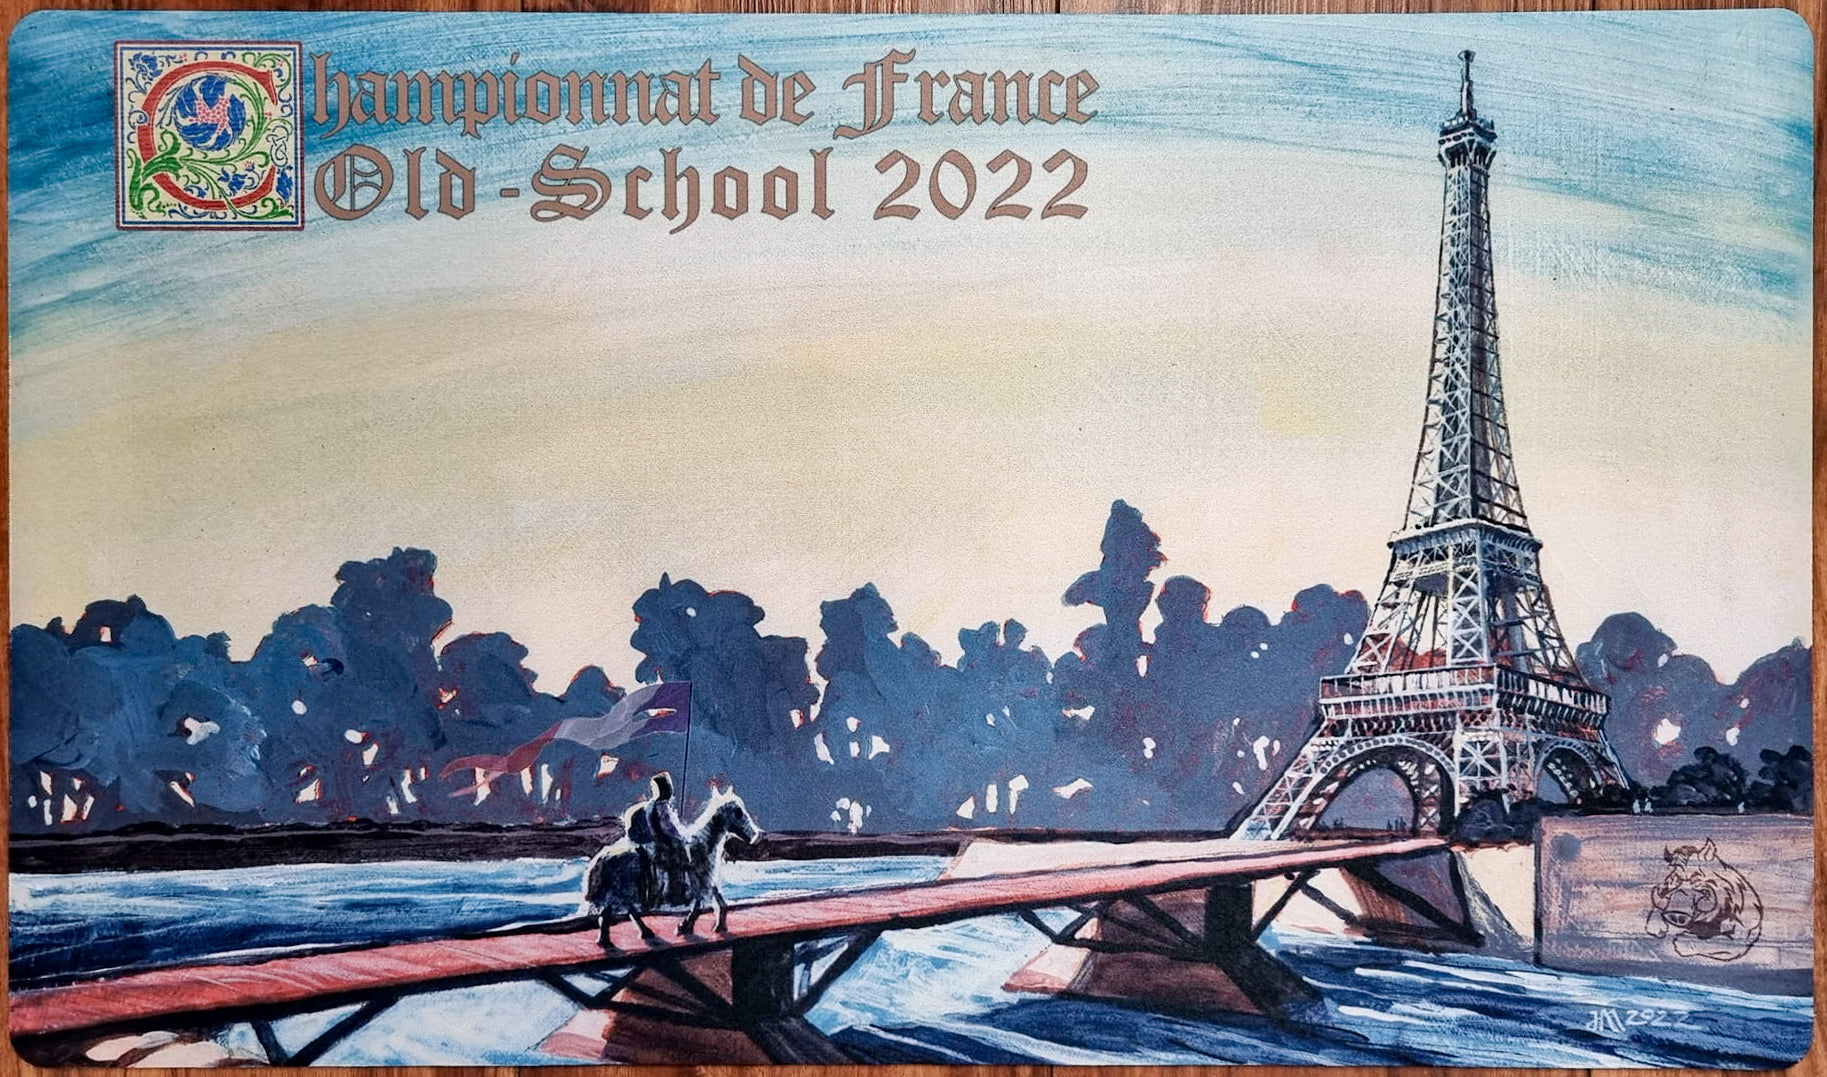 Eiffel Tower Moat - Jeff A. Menges - Championnat de France Old-School 2022 - MTG Playmat